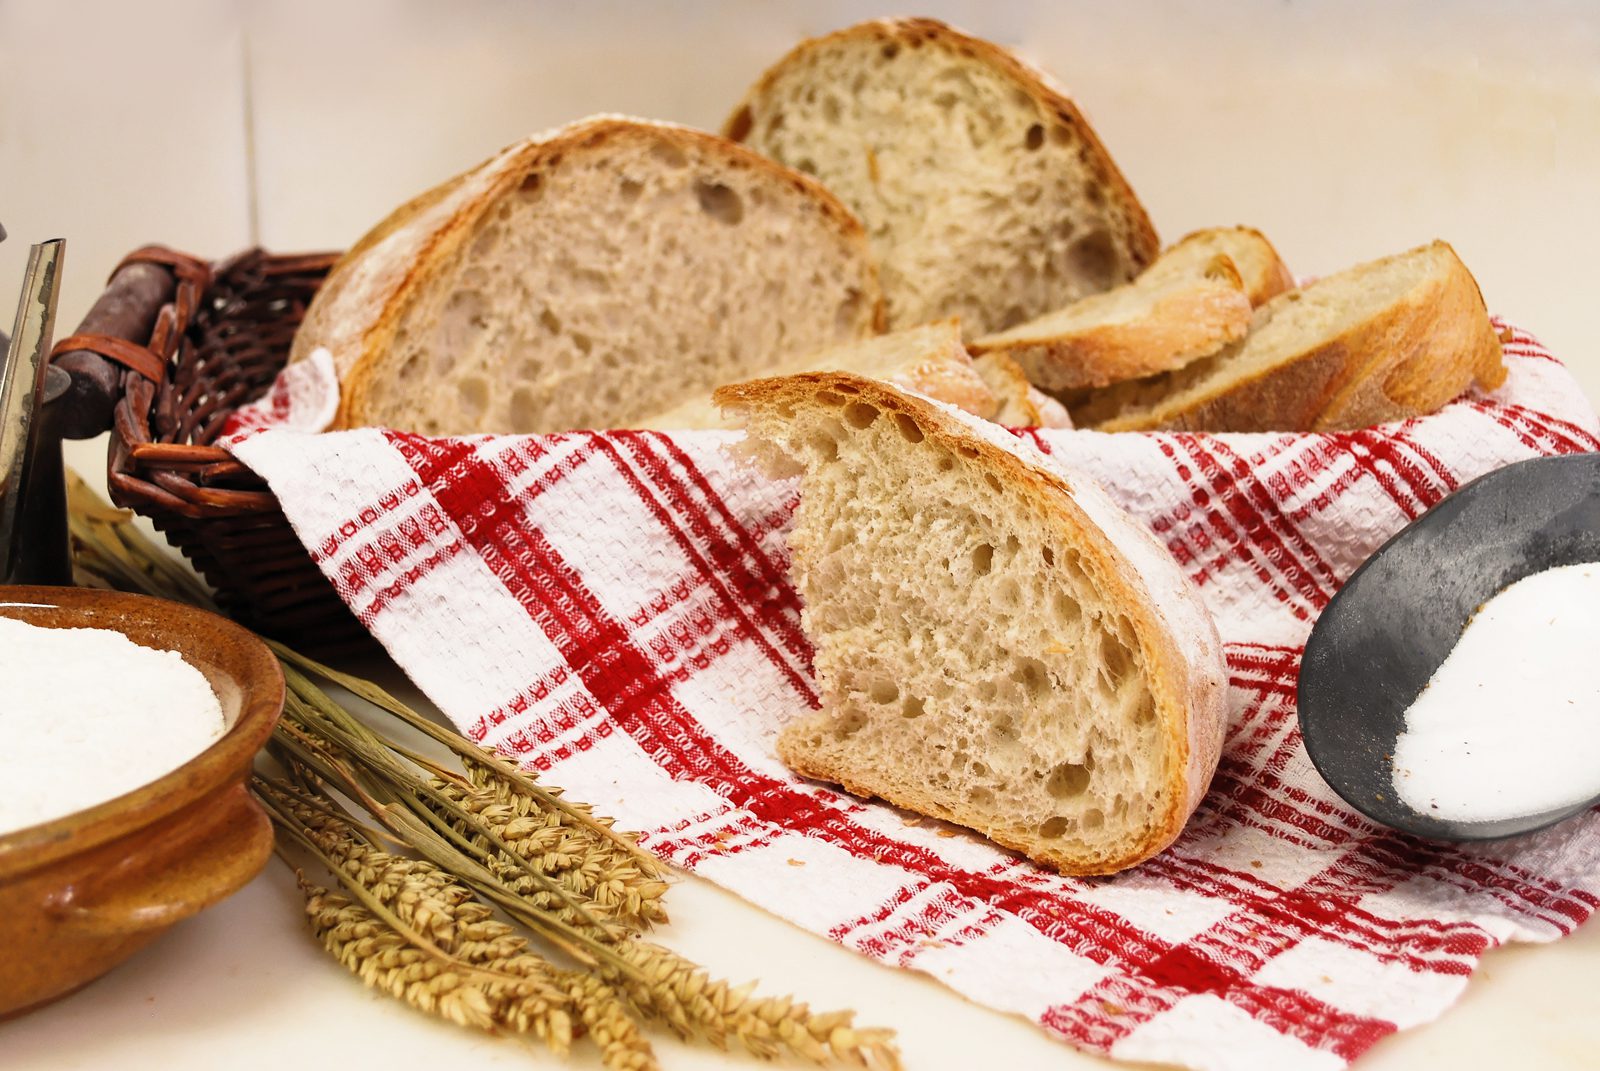 Pane fresco ogni giorno, in oltre 20 formati. Dalle ricette tradizionali al pane speciale